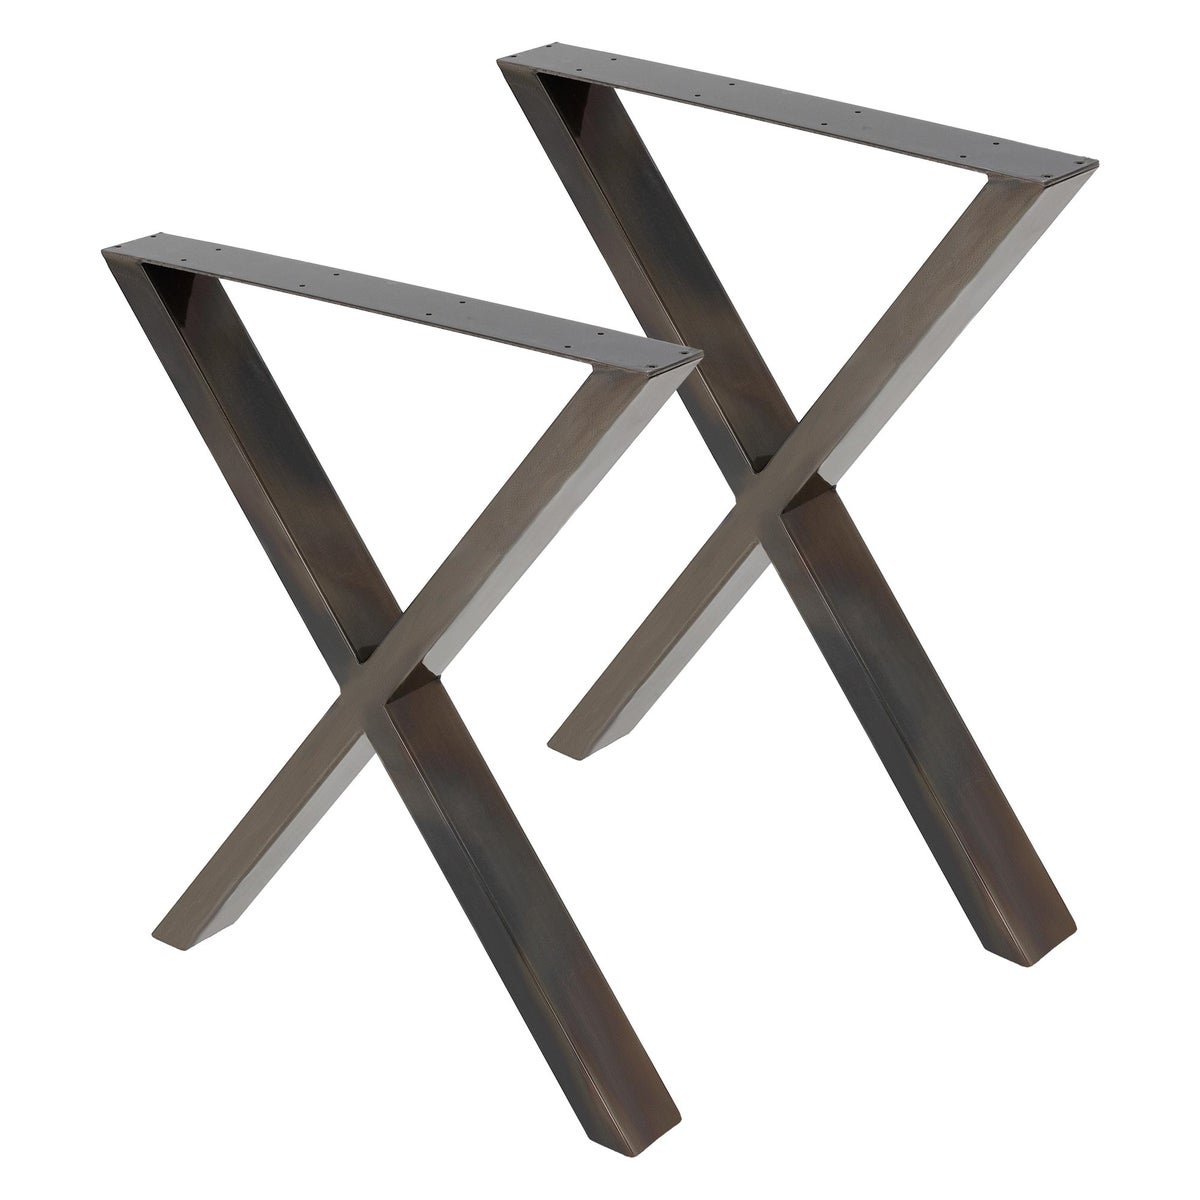 ECD Germany 2x Tischbeine Kreuz X-Form X-Design 60 x 73 cm, Industrial, pulverbeschichtete Stahl, Industriedesign, Metall Tischkufen Tischuntergestell Tischgestell Möbelfüße, für Esstisch Schreibtisch